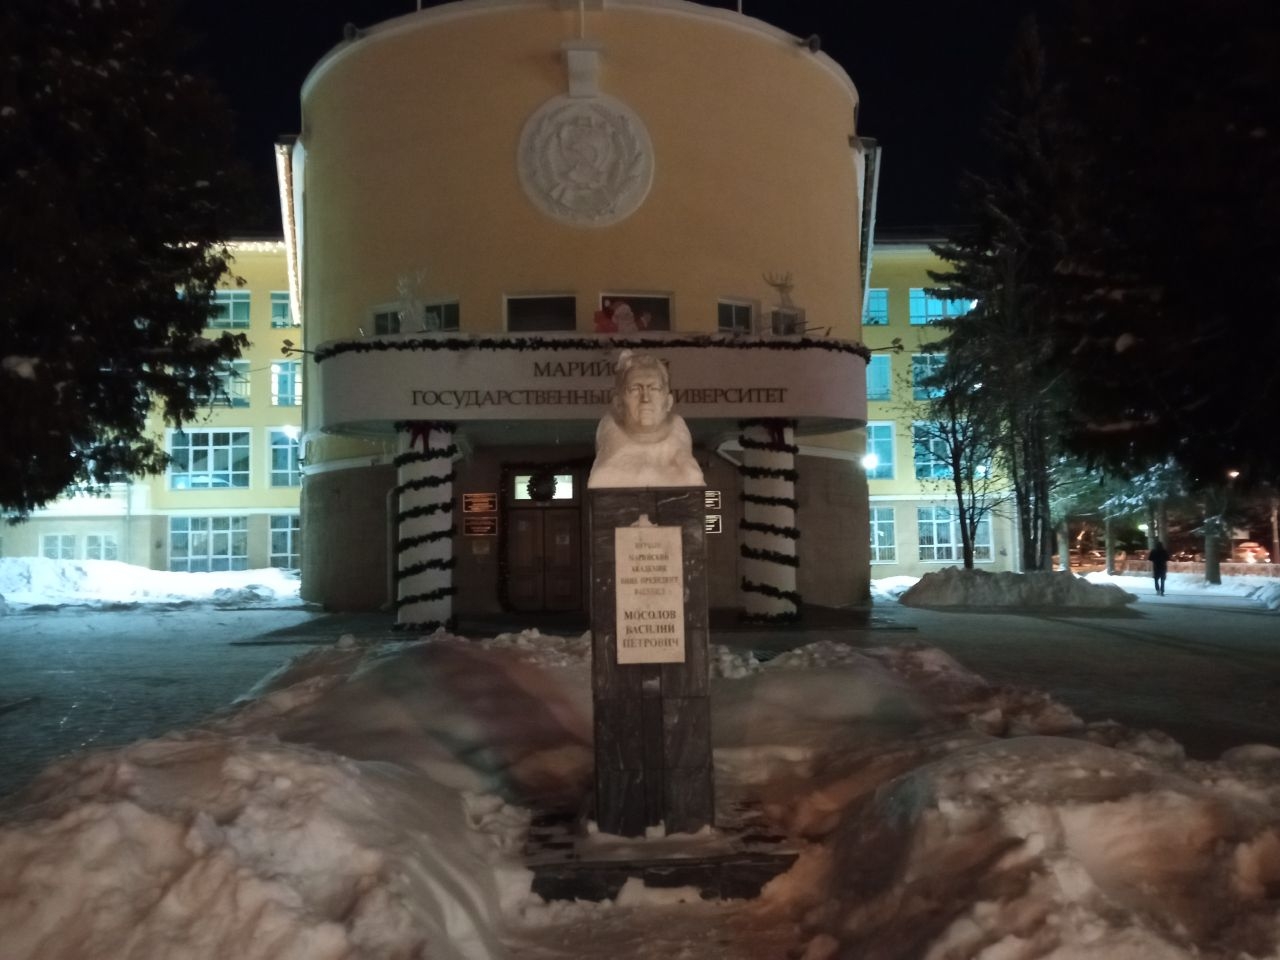 Вечерняя прогулка по столице Марийской республики Йошкар-Ола, Россия